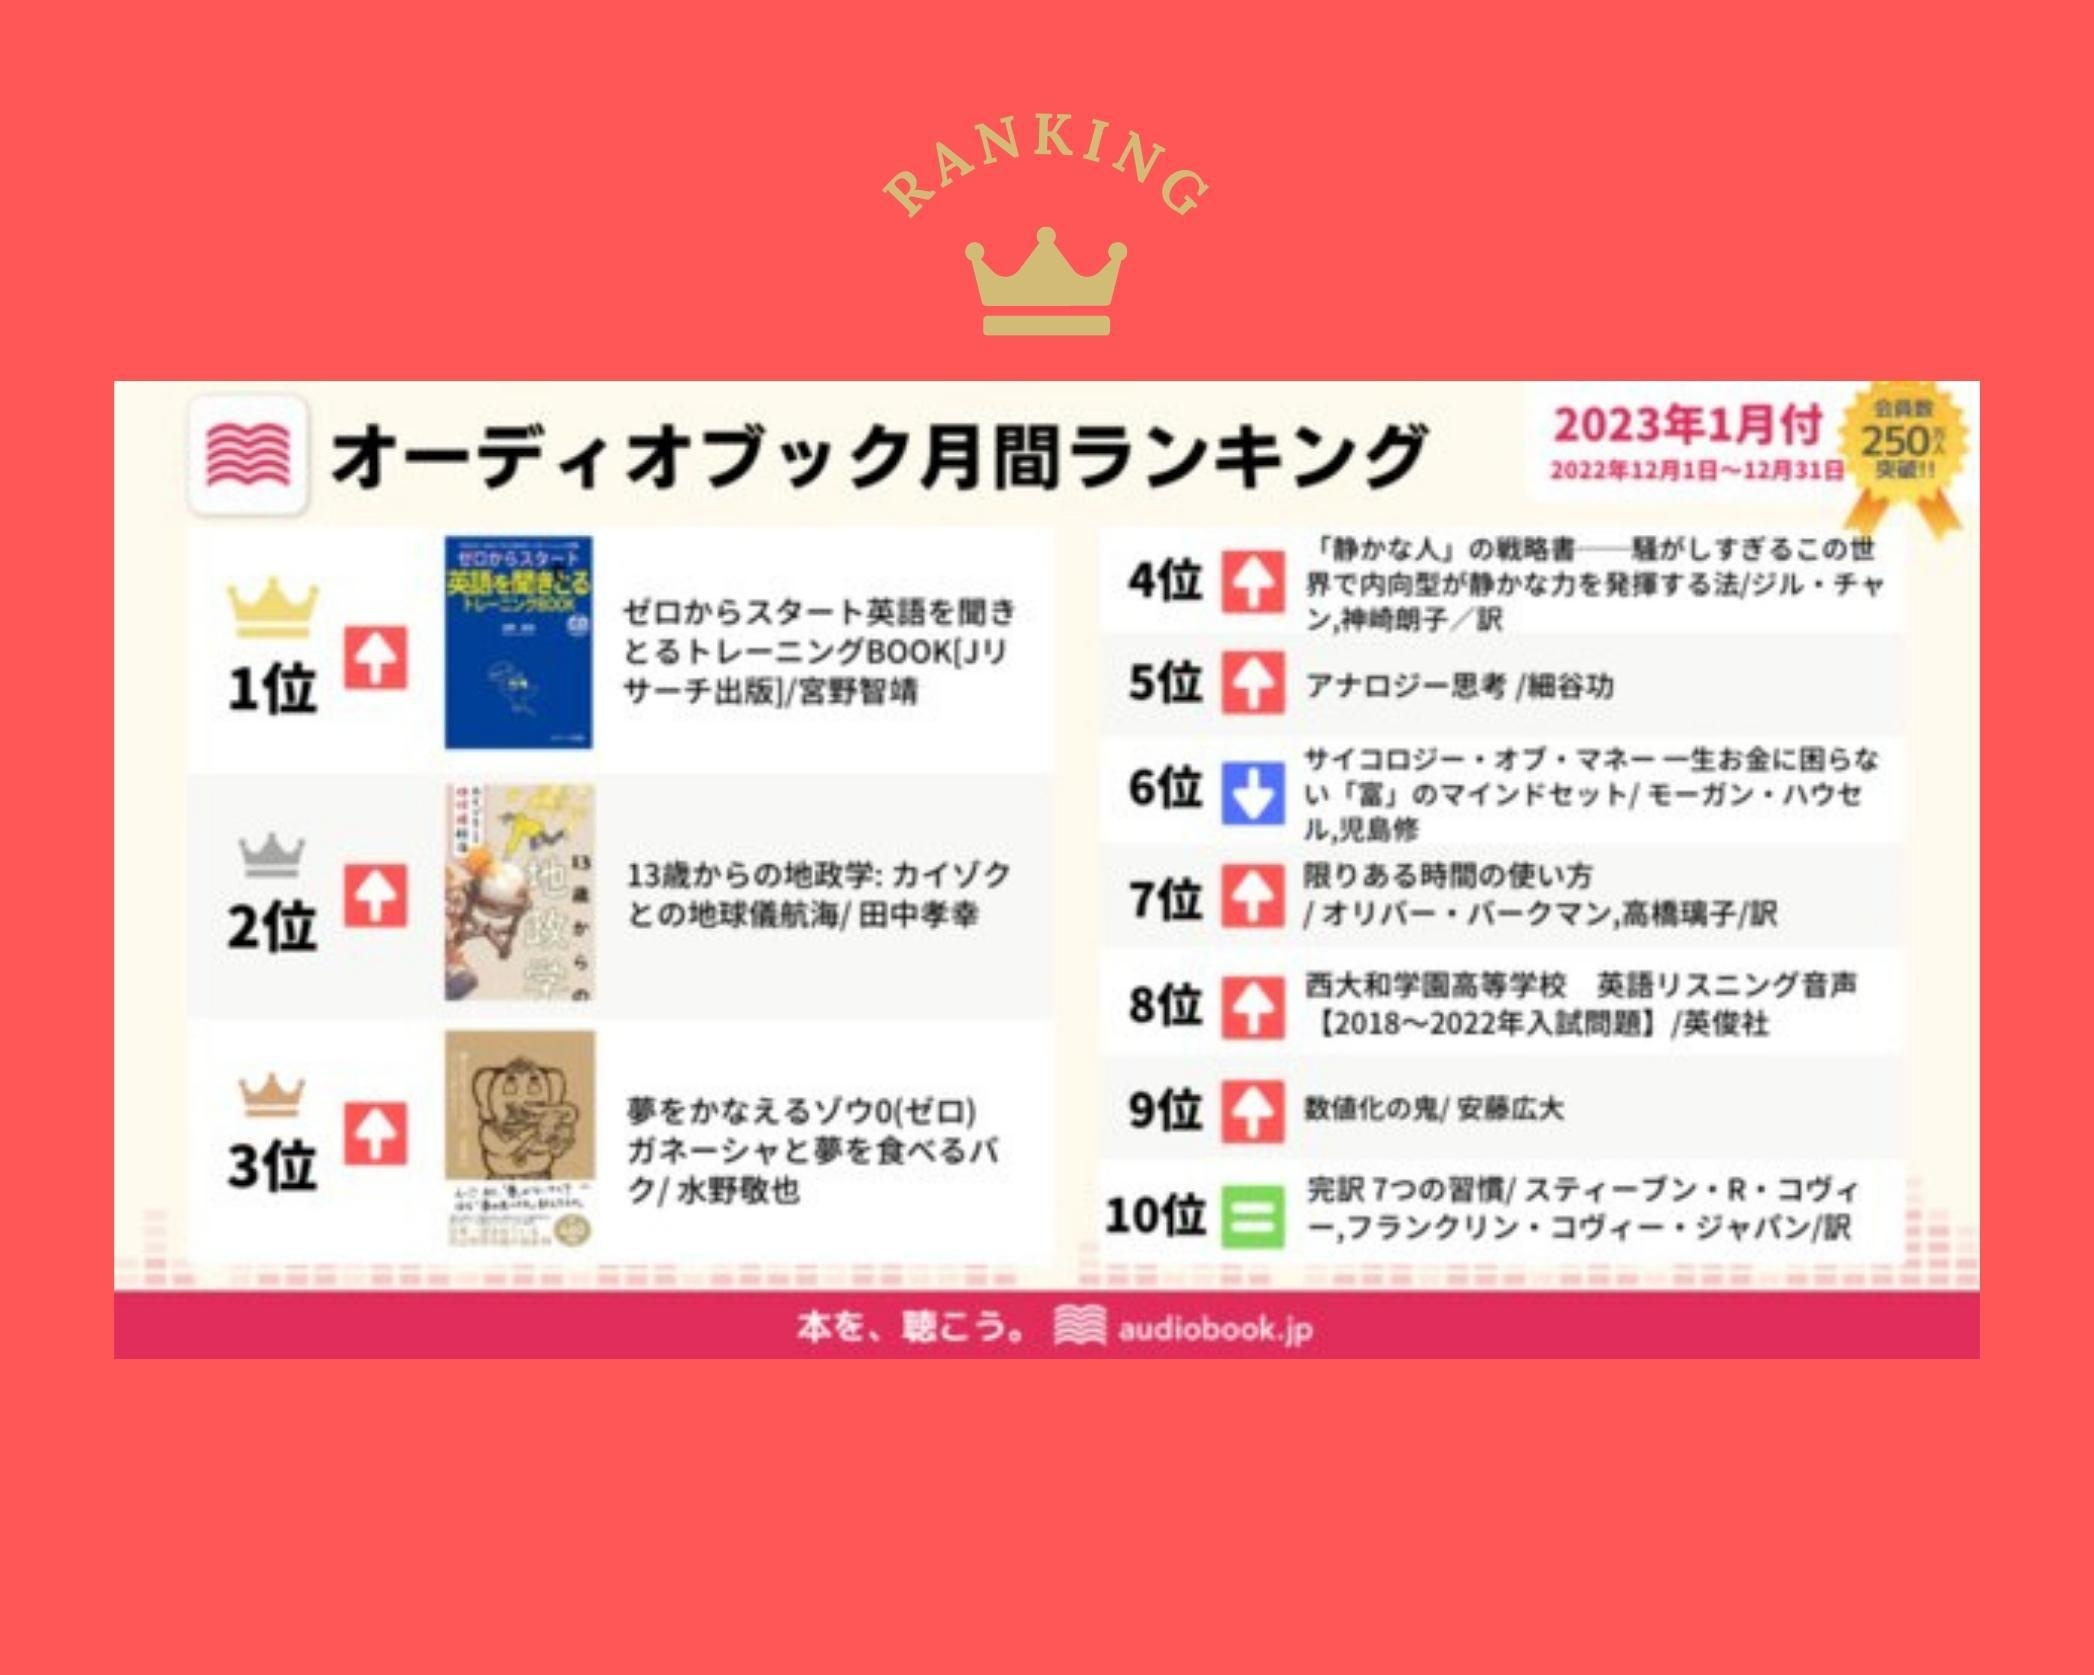 「audiobook.jp」におけるオーディオブック月間ランキング1月付